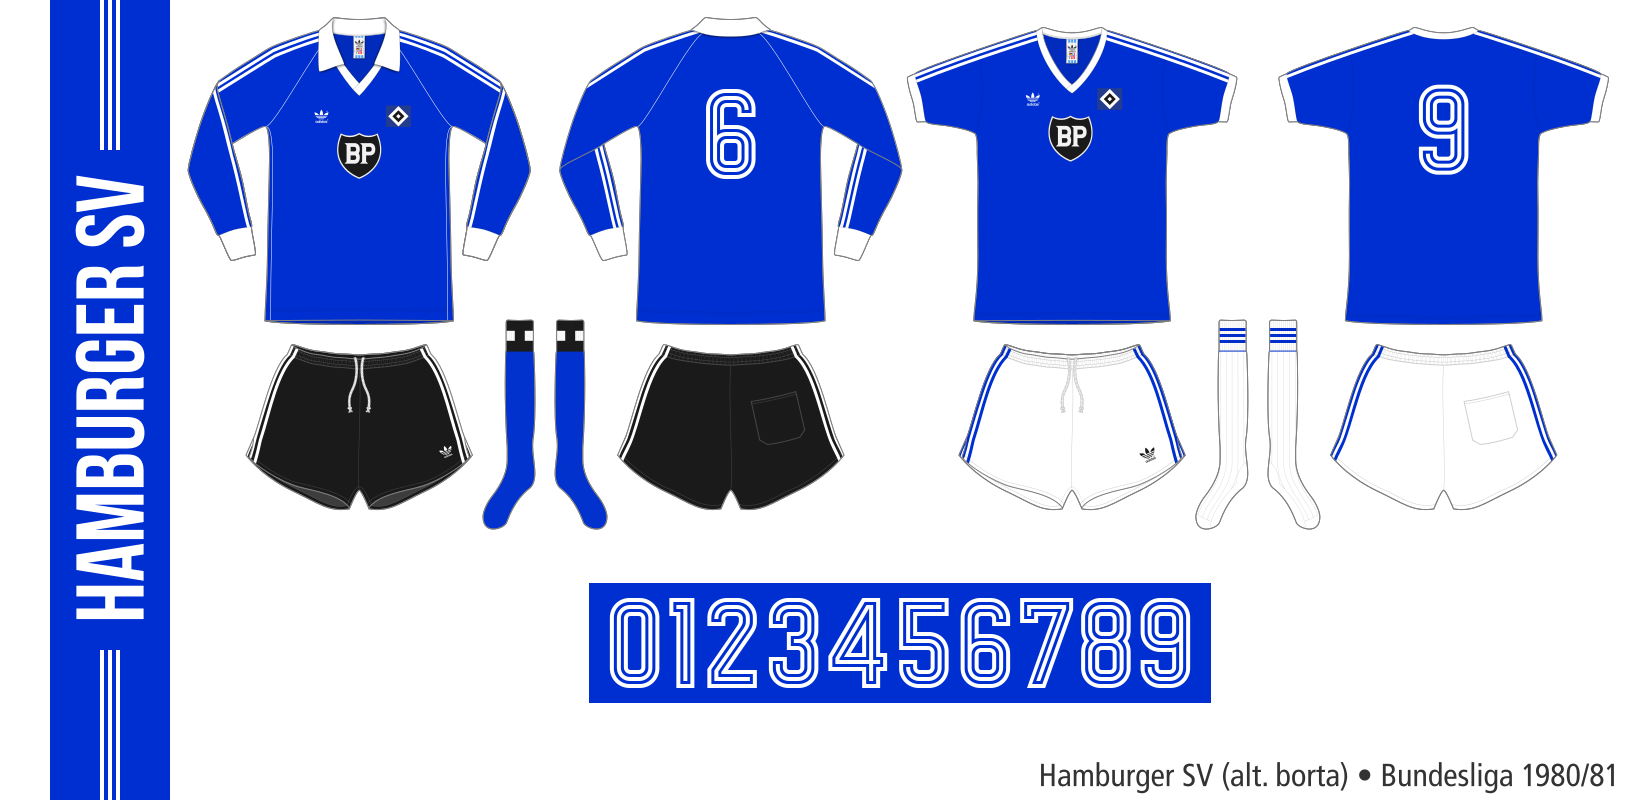 Hamburger SV 1980/81 (alternativ borta)